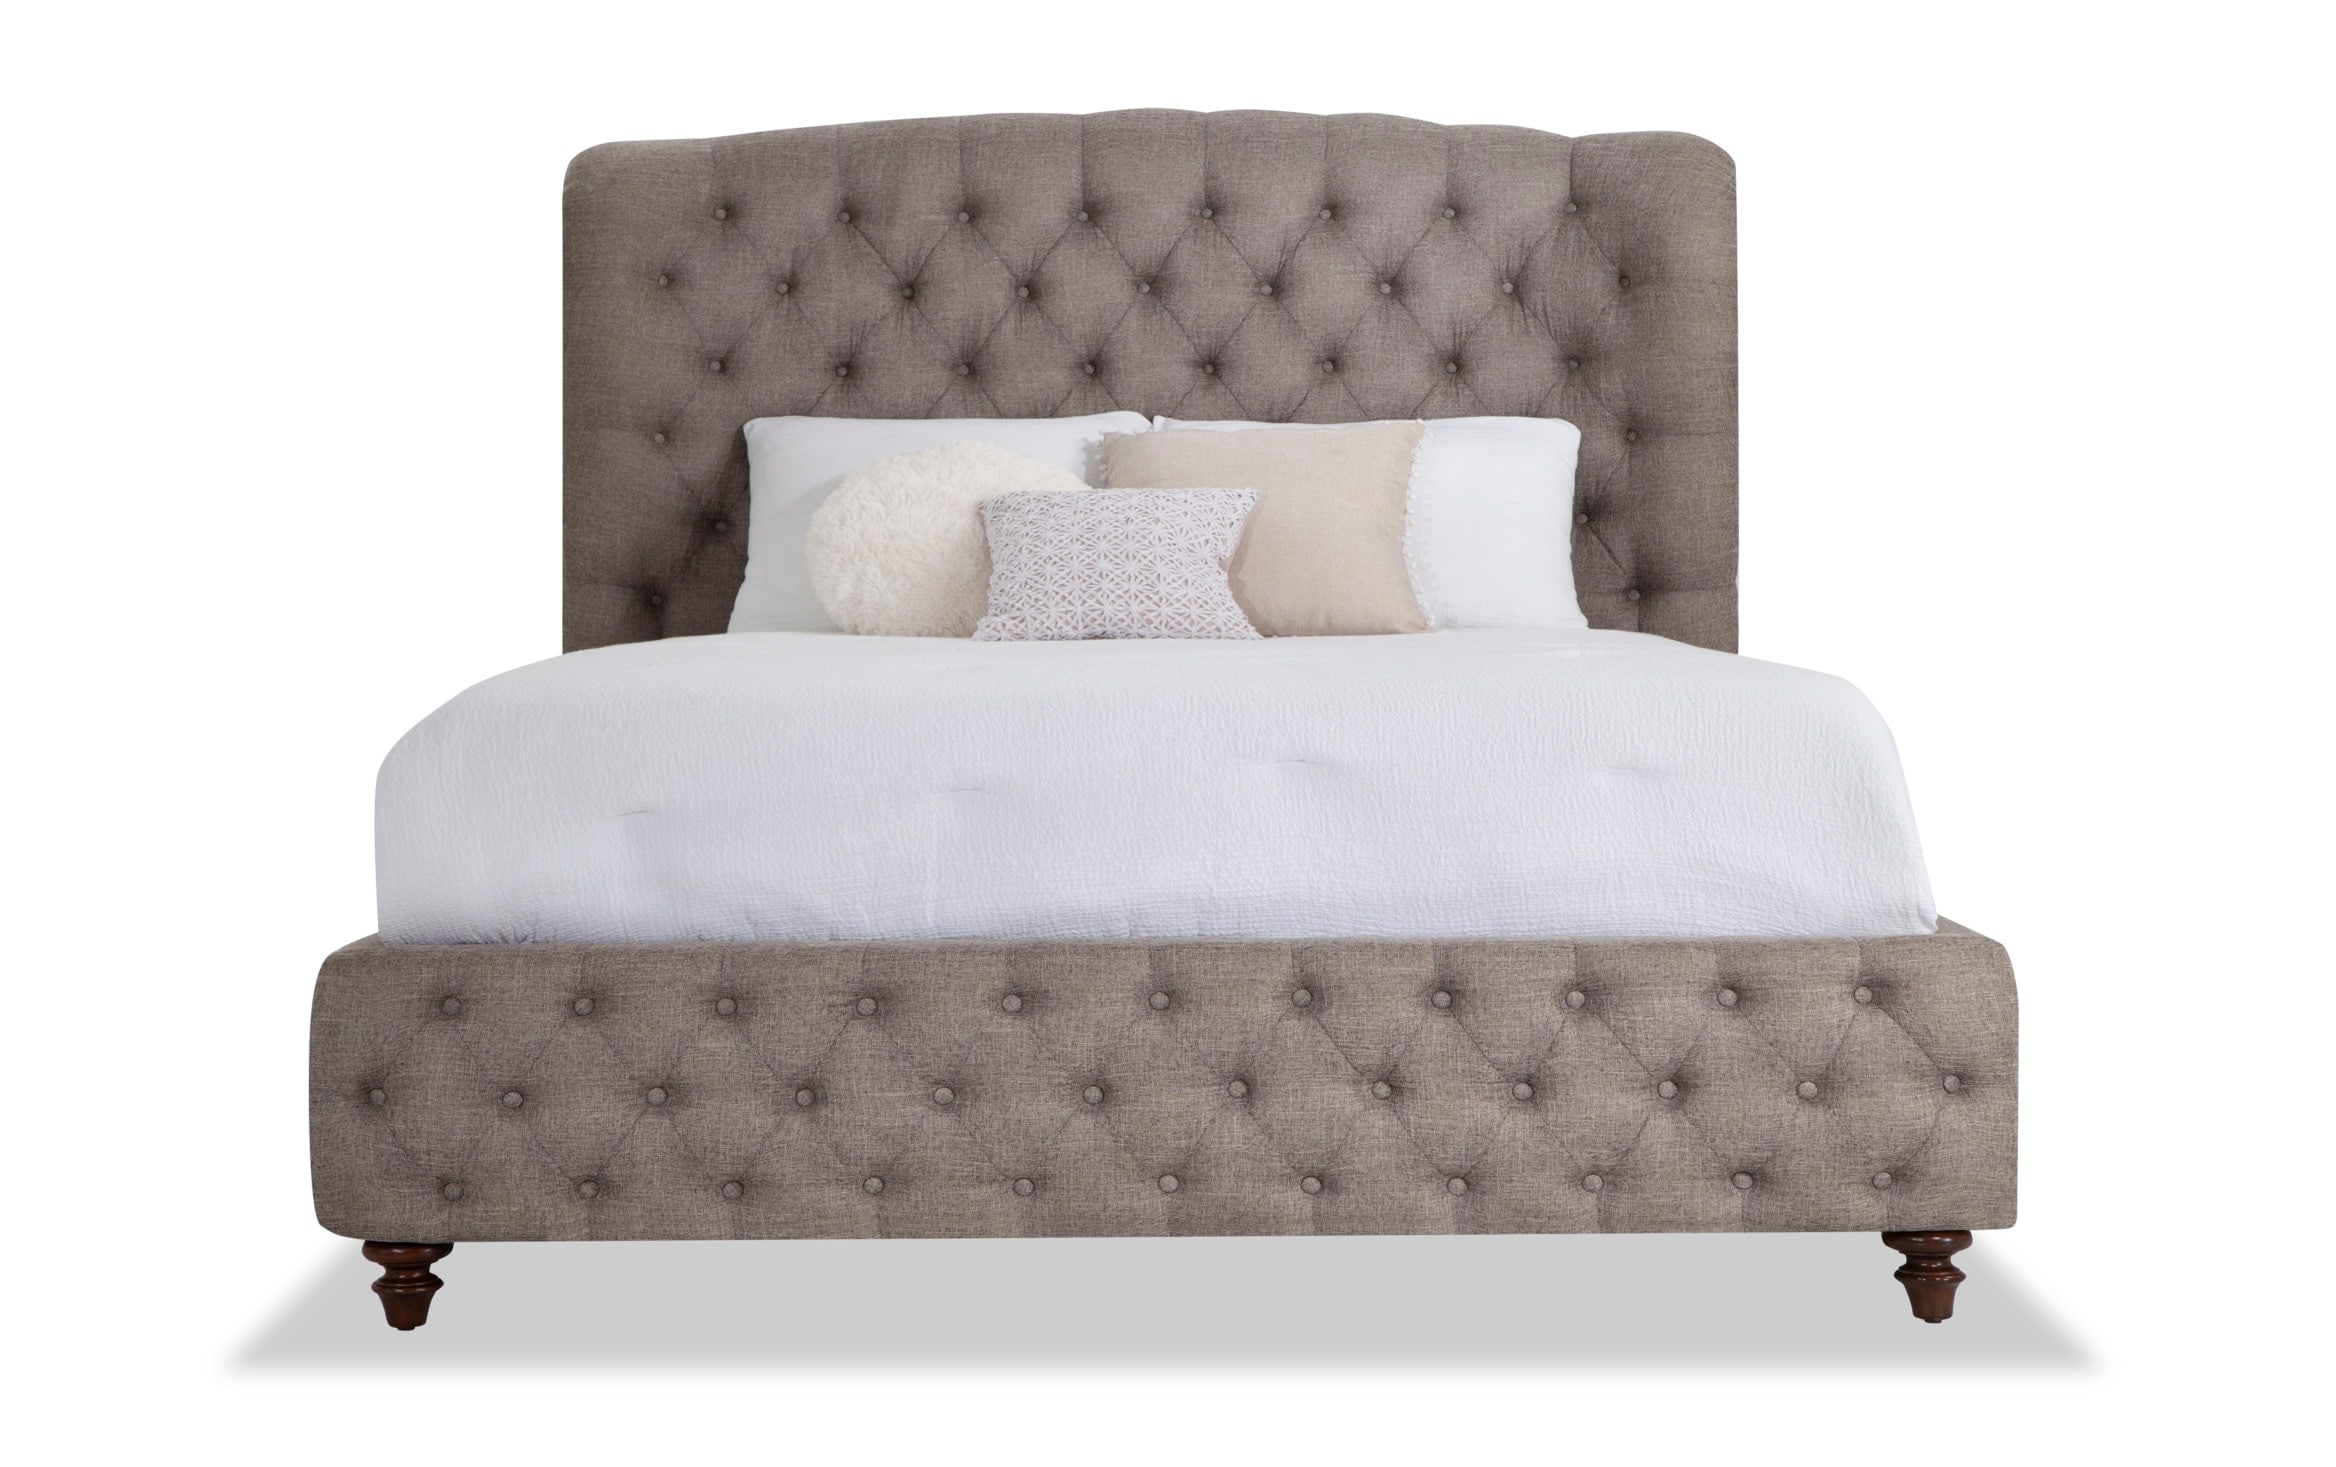 Scarlett Upholstered King Bed Bob S, White Upholstered King Bed